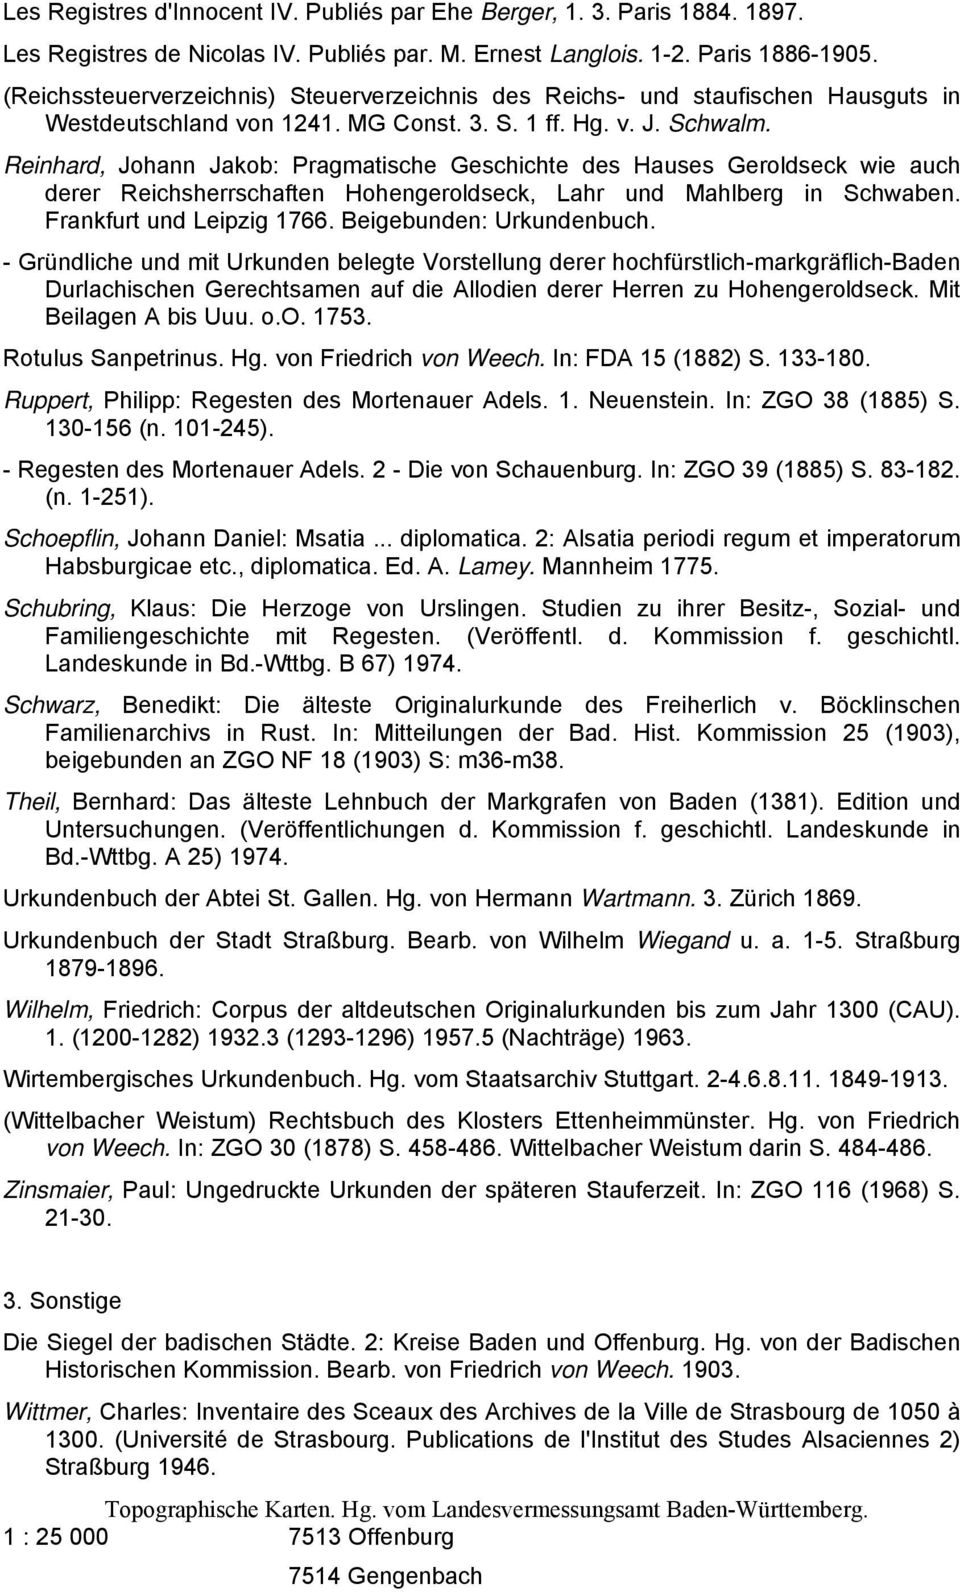 Reinhard, Johann Jakob: Pragmatische Geschichte des Hauses Geroldseck wie auch derer Reichsherrschaften Hohengeroldseck, Lahr und Mahlberg in Schwaben. Frankfurt und Leipzig 1766.